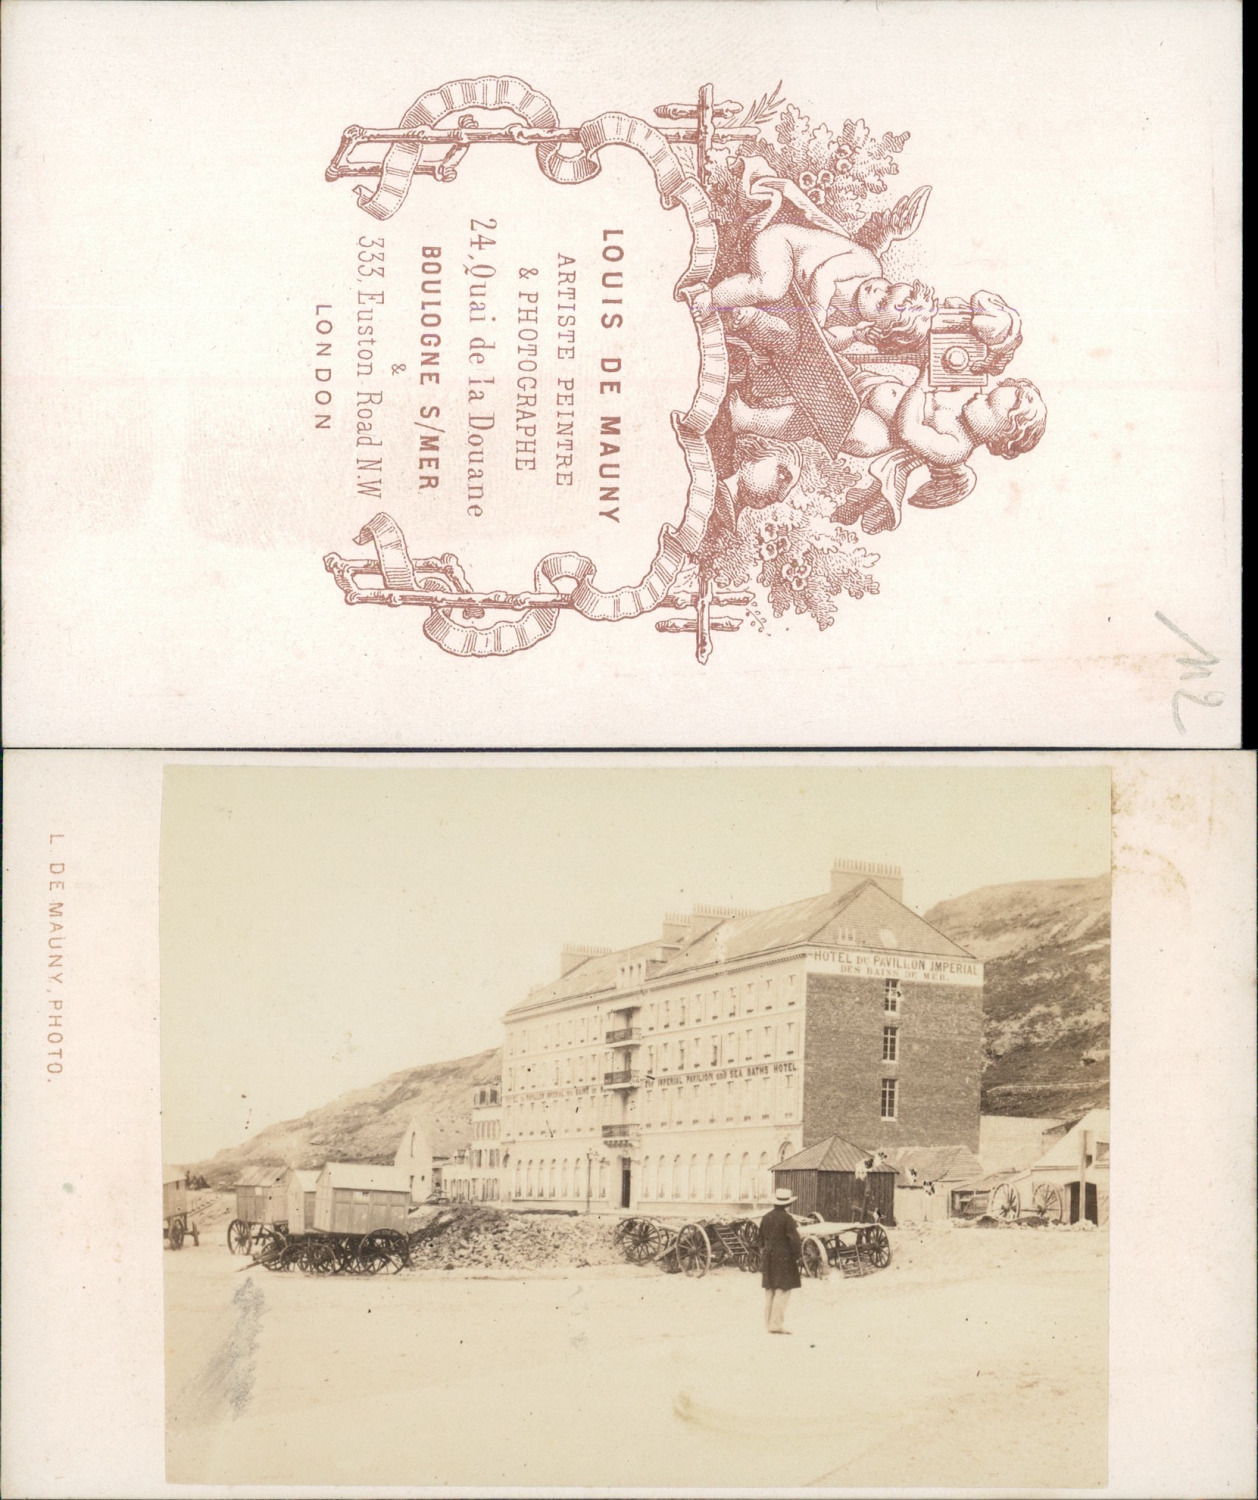 Louis de Mauny, Boulogne sur Mer, Hôtel du Pavillon Imperial Vintage CDV albumen